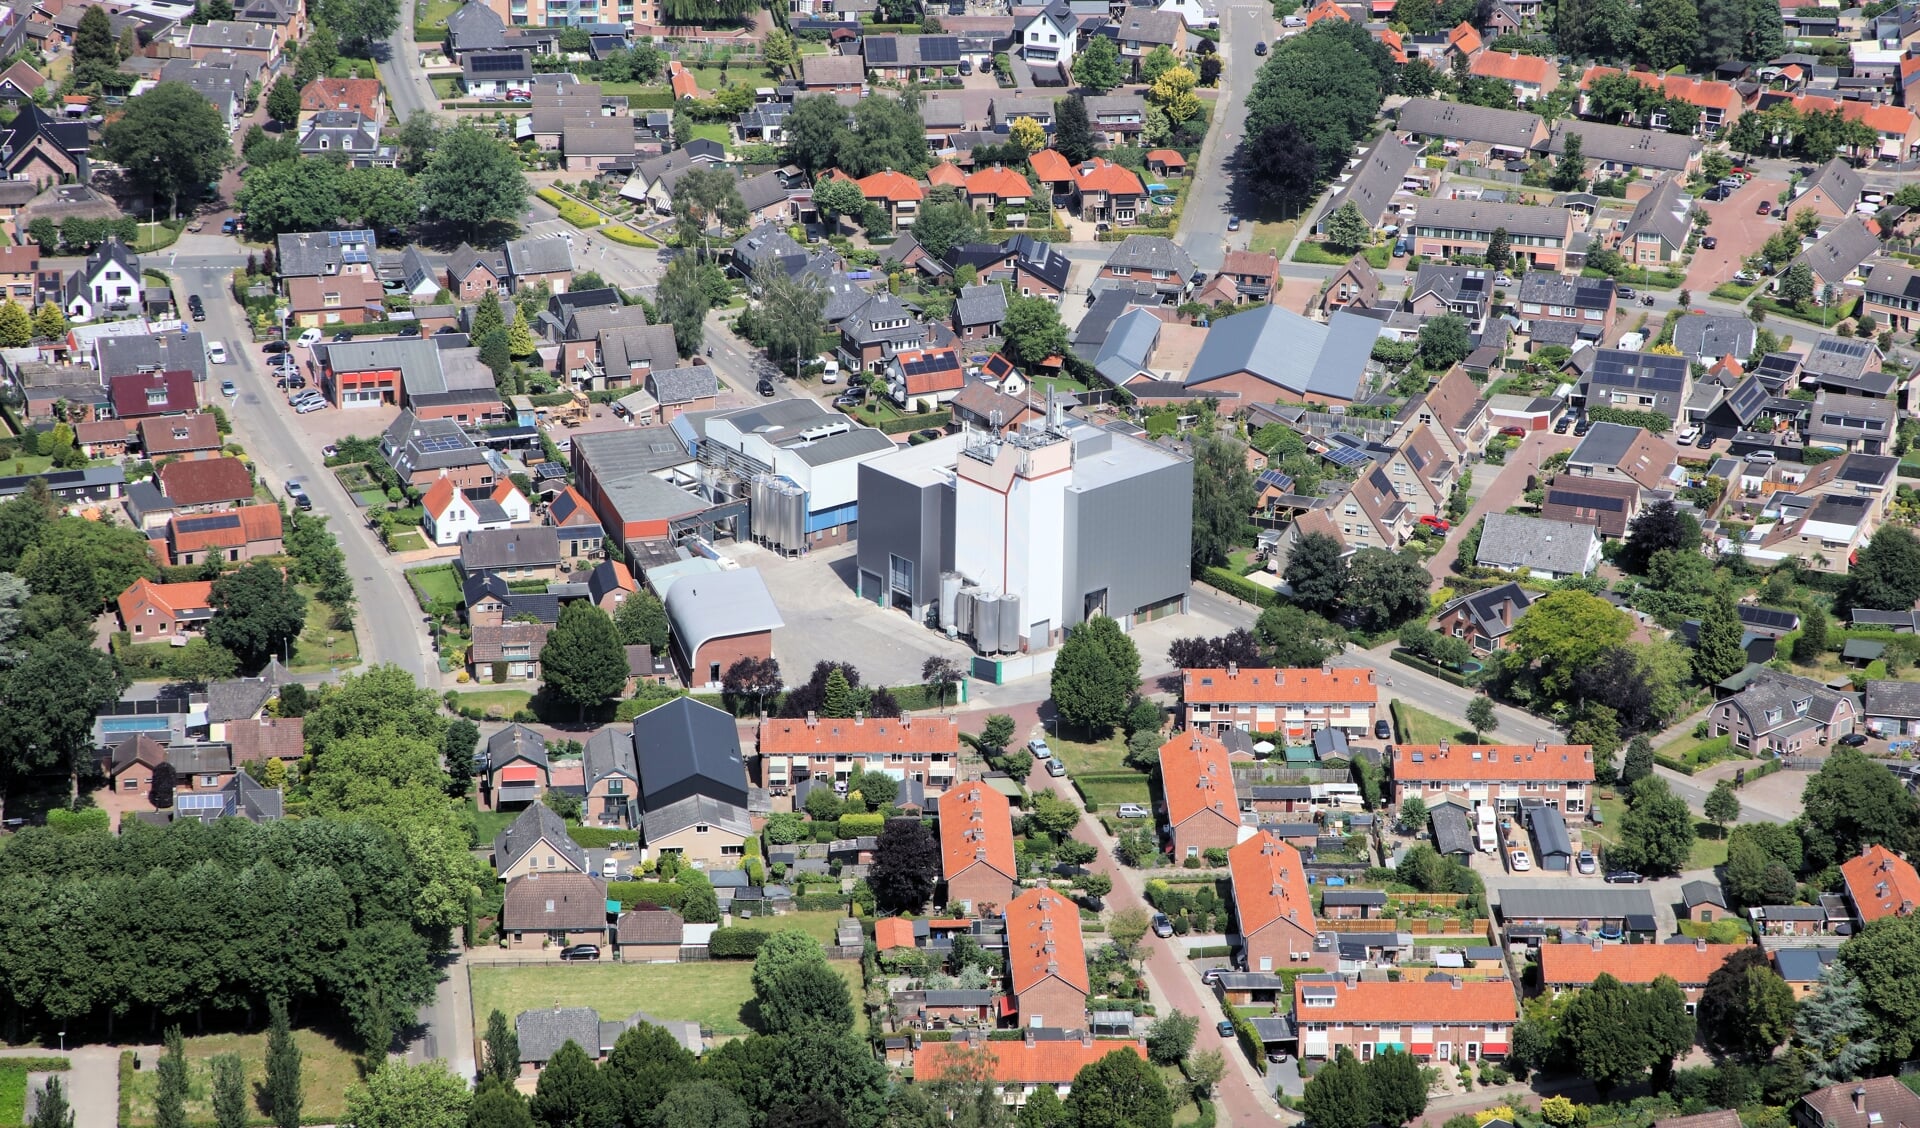 Mengvoeder Brons in 1929 in Voorthuizen gevestigd. Het dorp is er vervolgens omheen gegroeid.